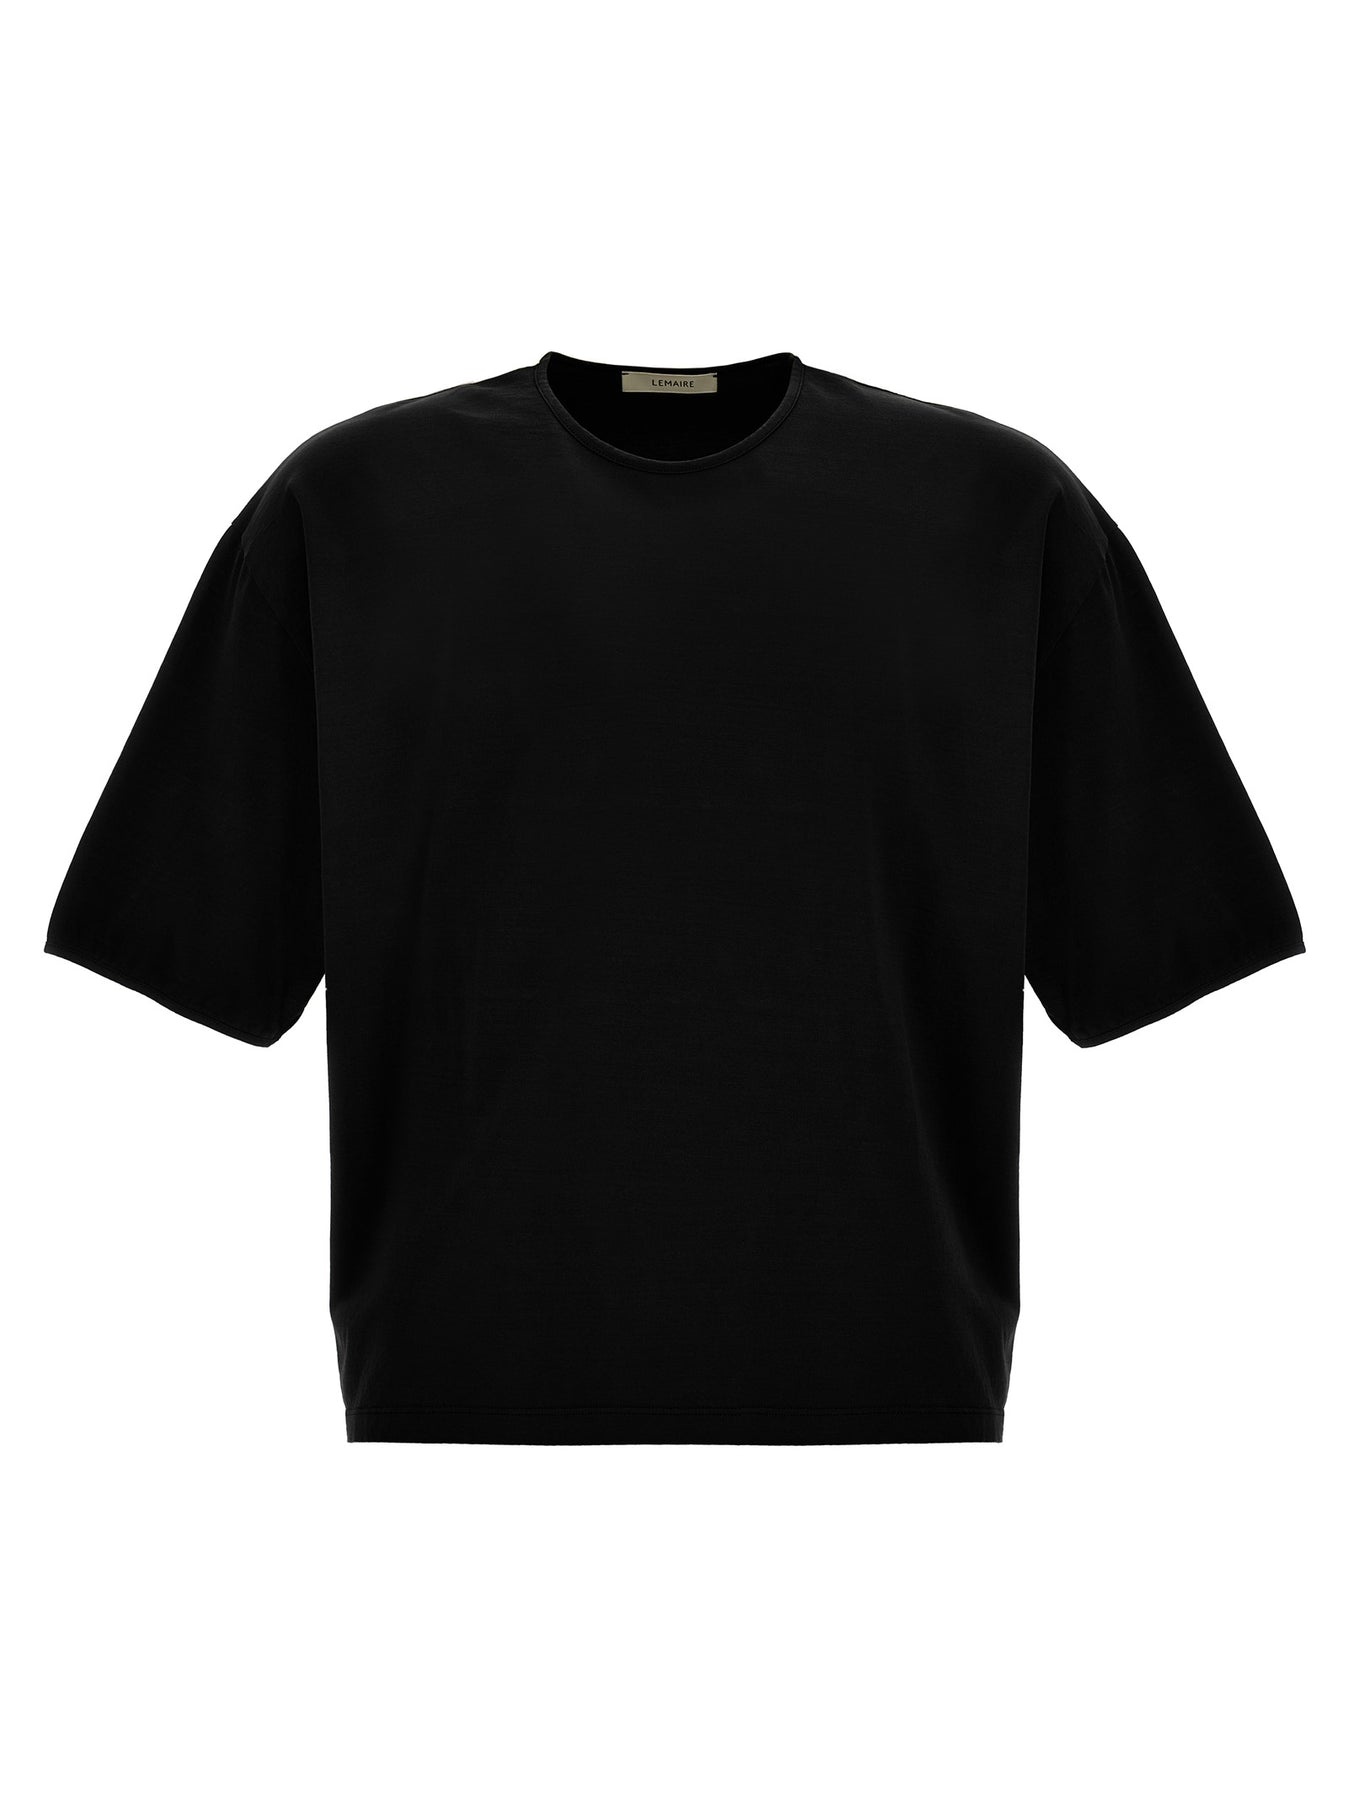 Mercerized Cotton T-Shirt Black - 1